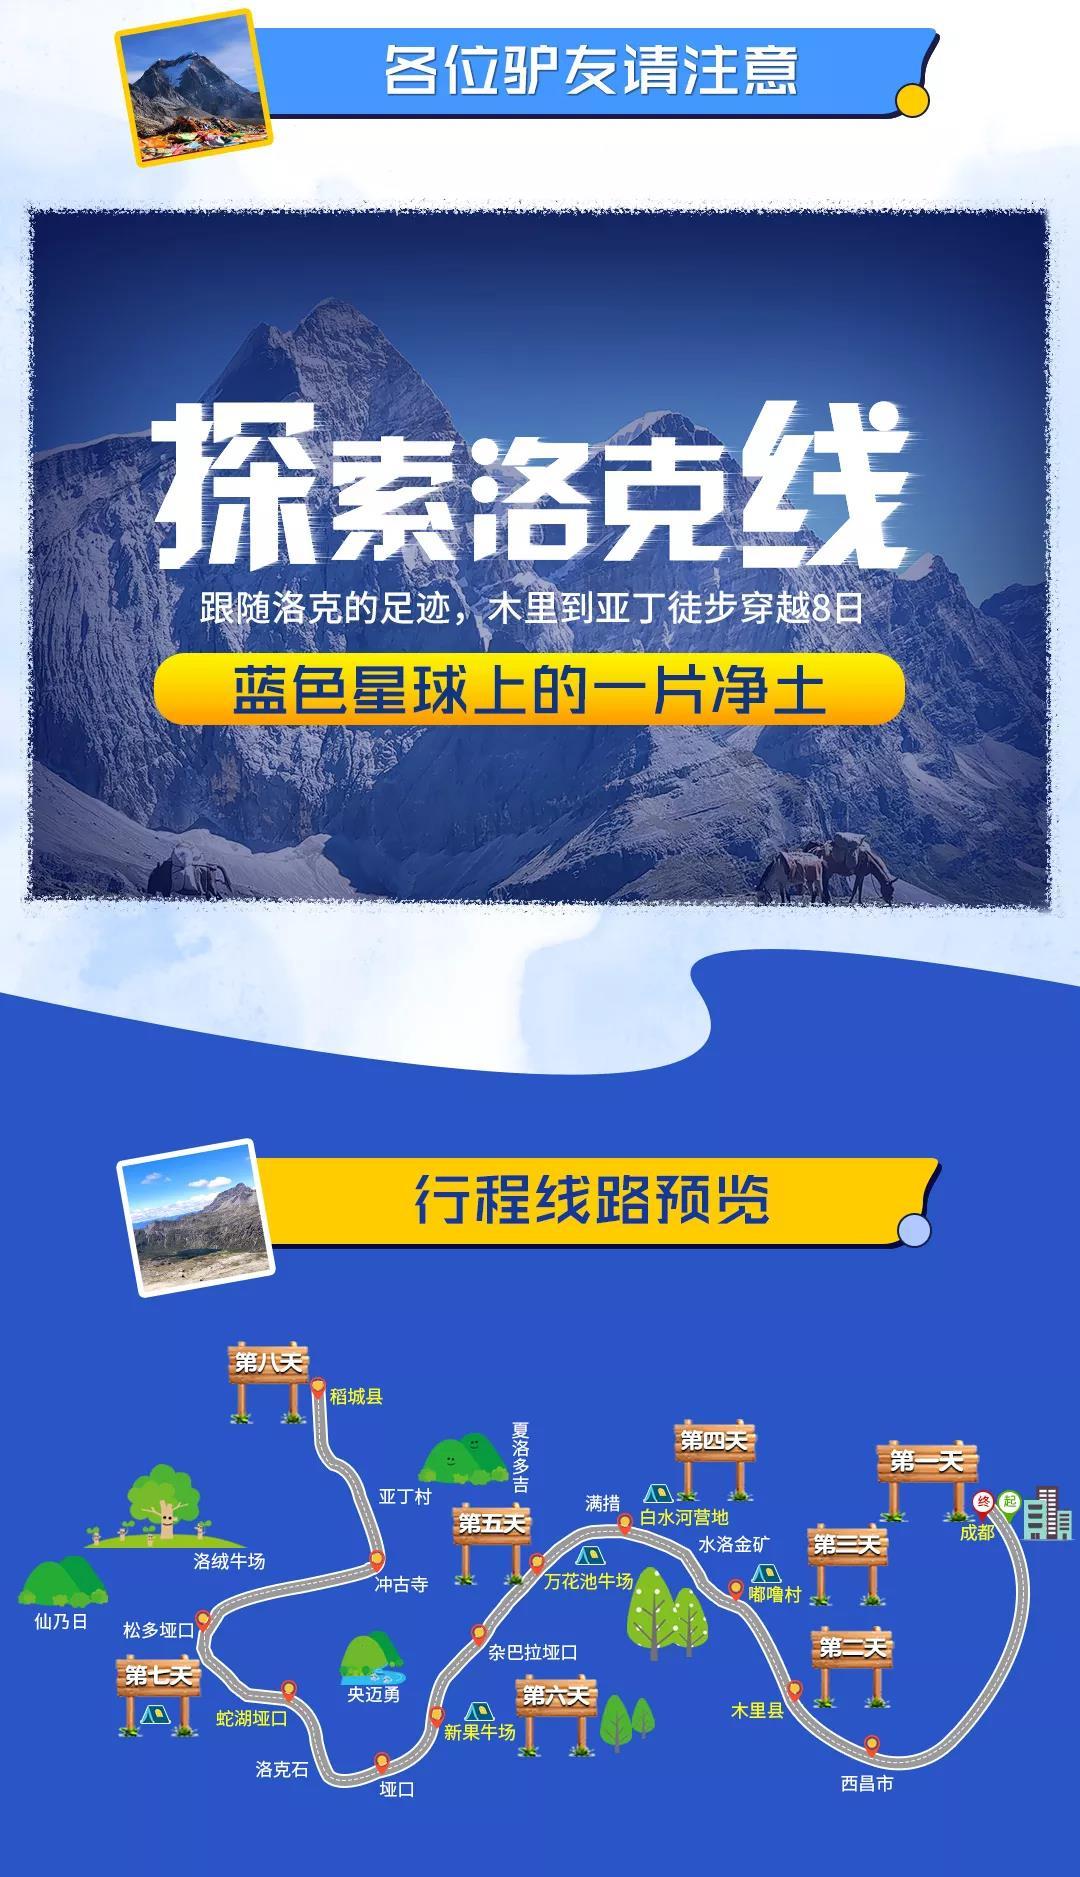 【虎跳峡徒步】2020年09月18日-20日，中国十大经典徒步线路之一——虎跳峡高路徒步_活动